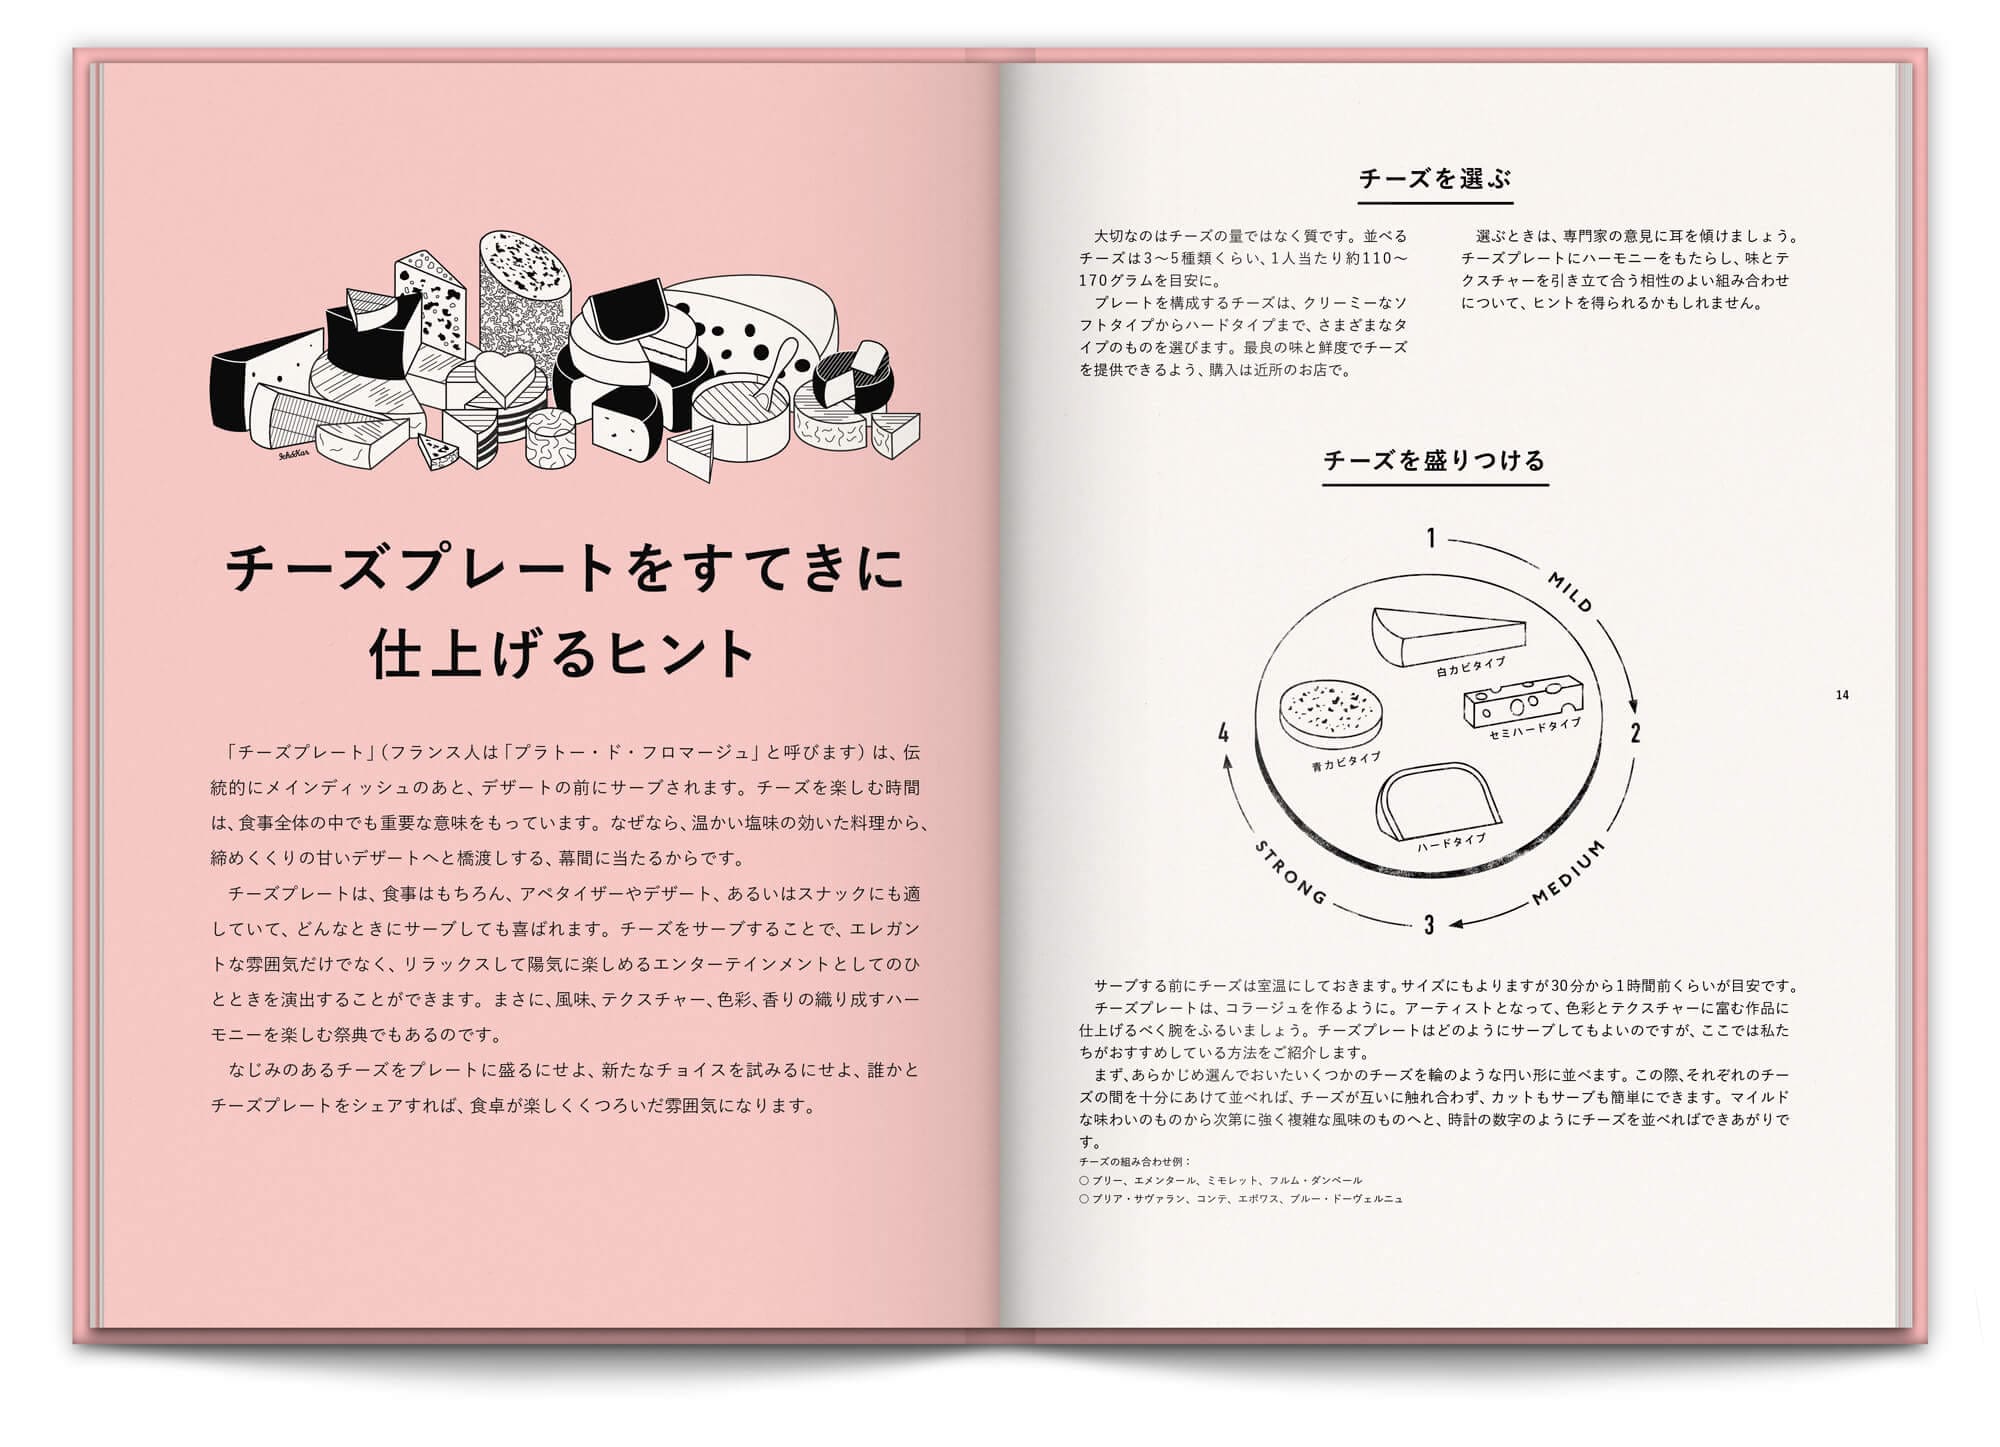 presentation et découpé du fromage dans le livre rose et tout en fleurs pour la maison du fromage à tokyo